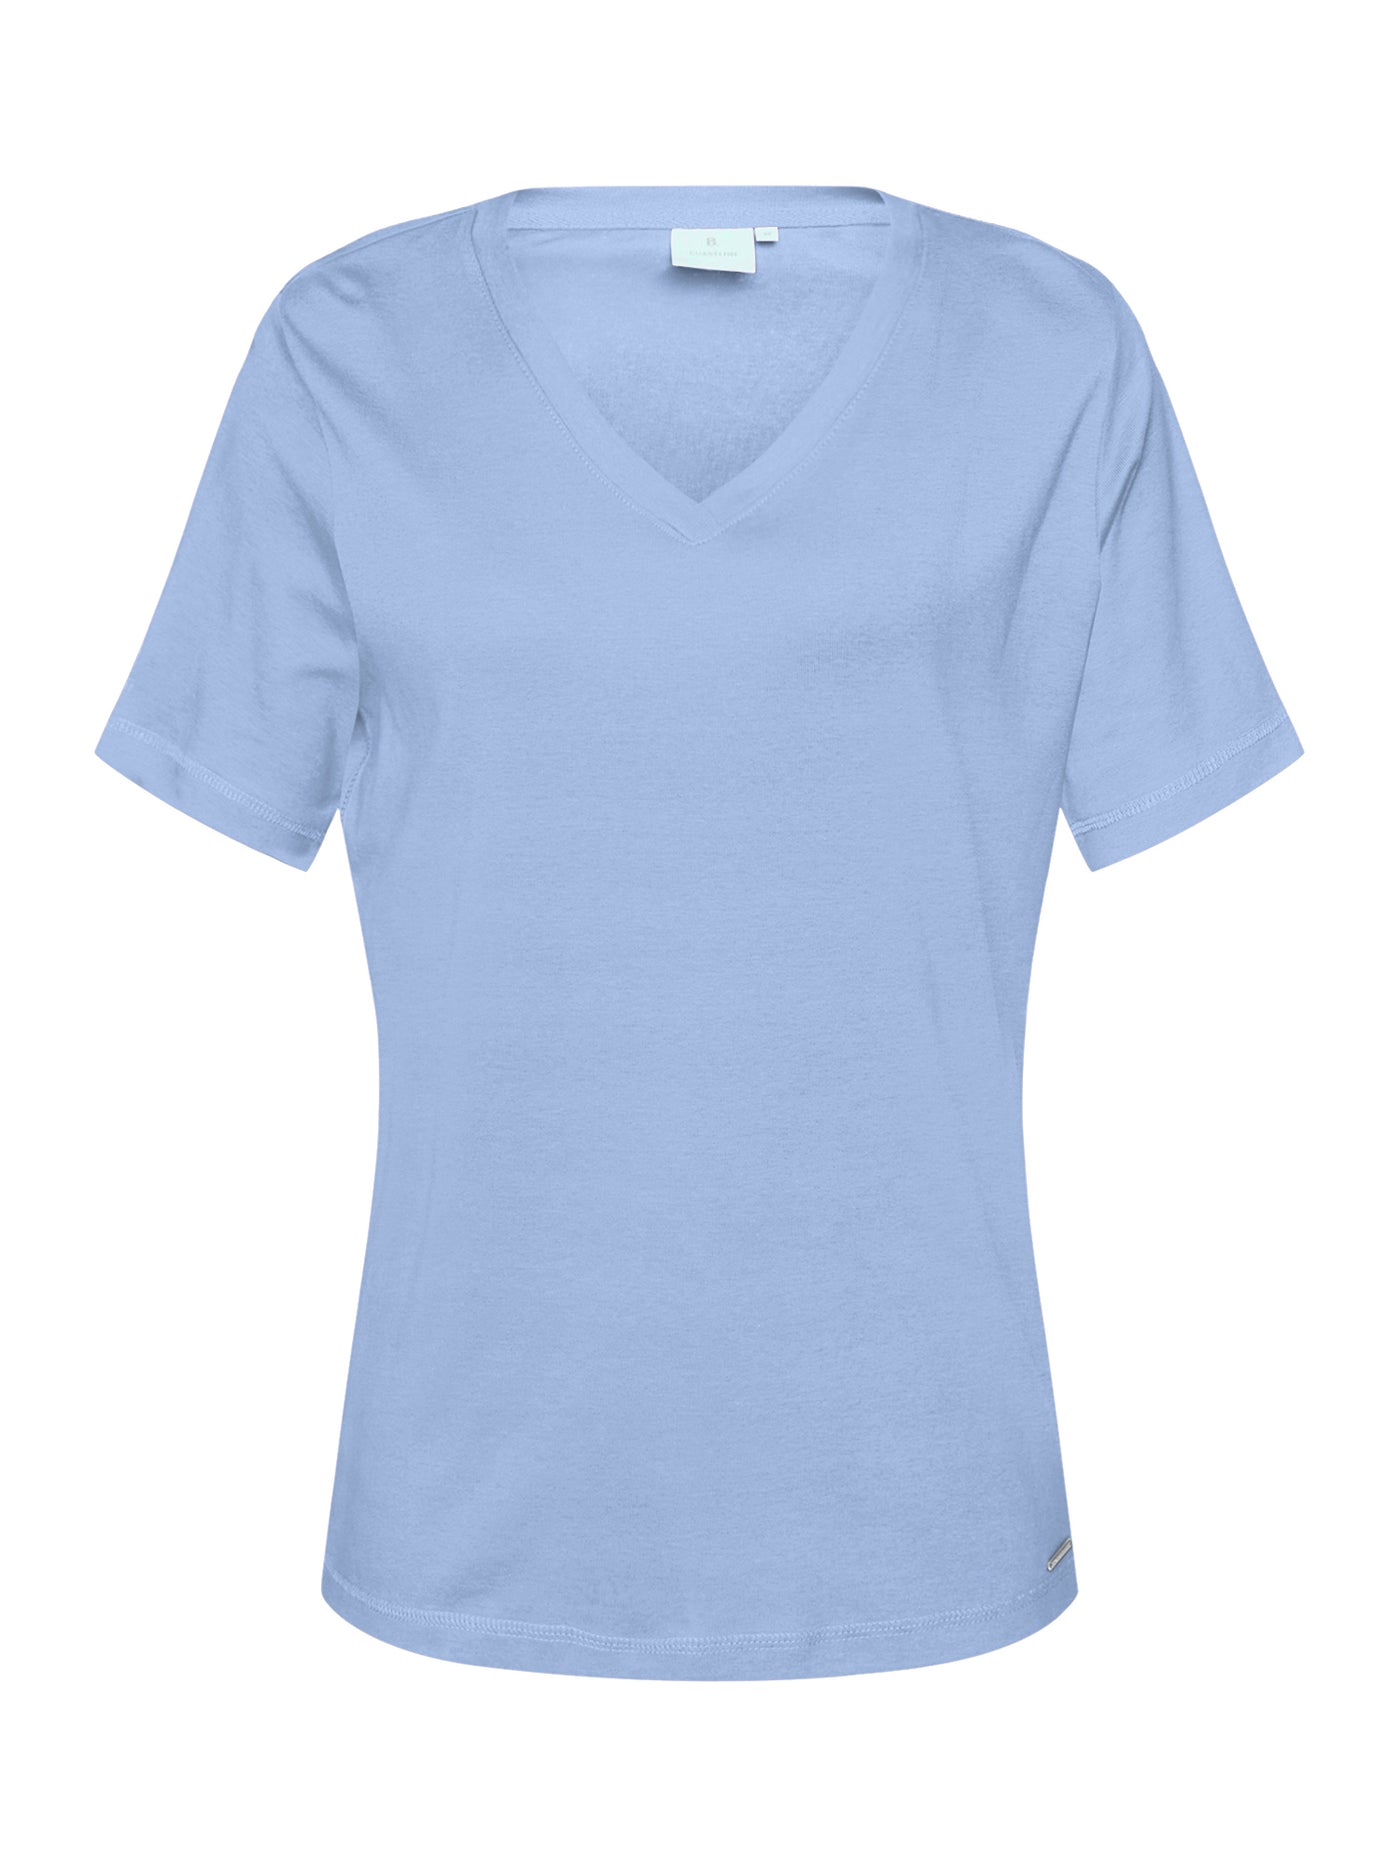 T-shirt - Light Blue